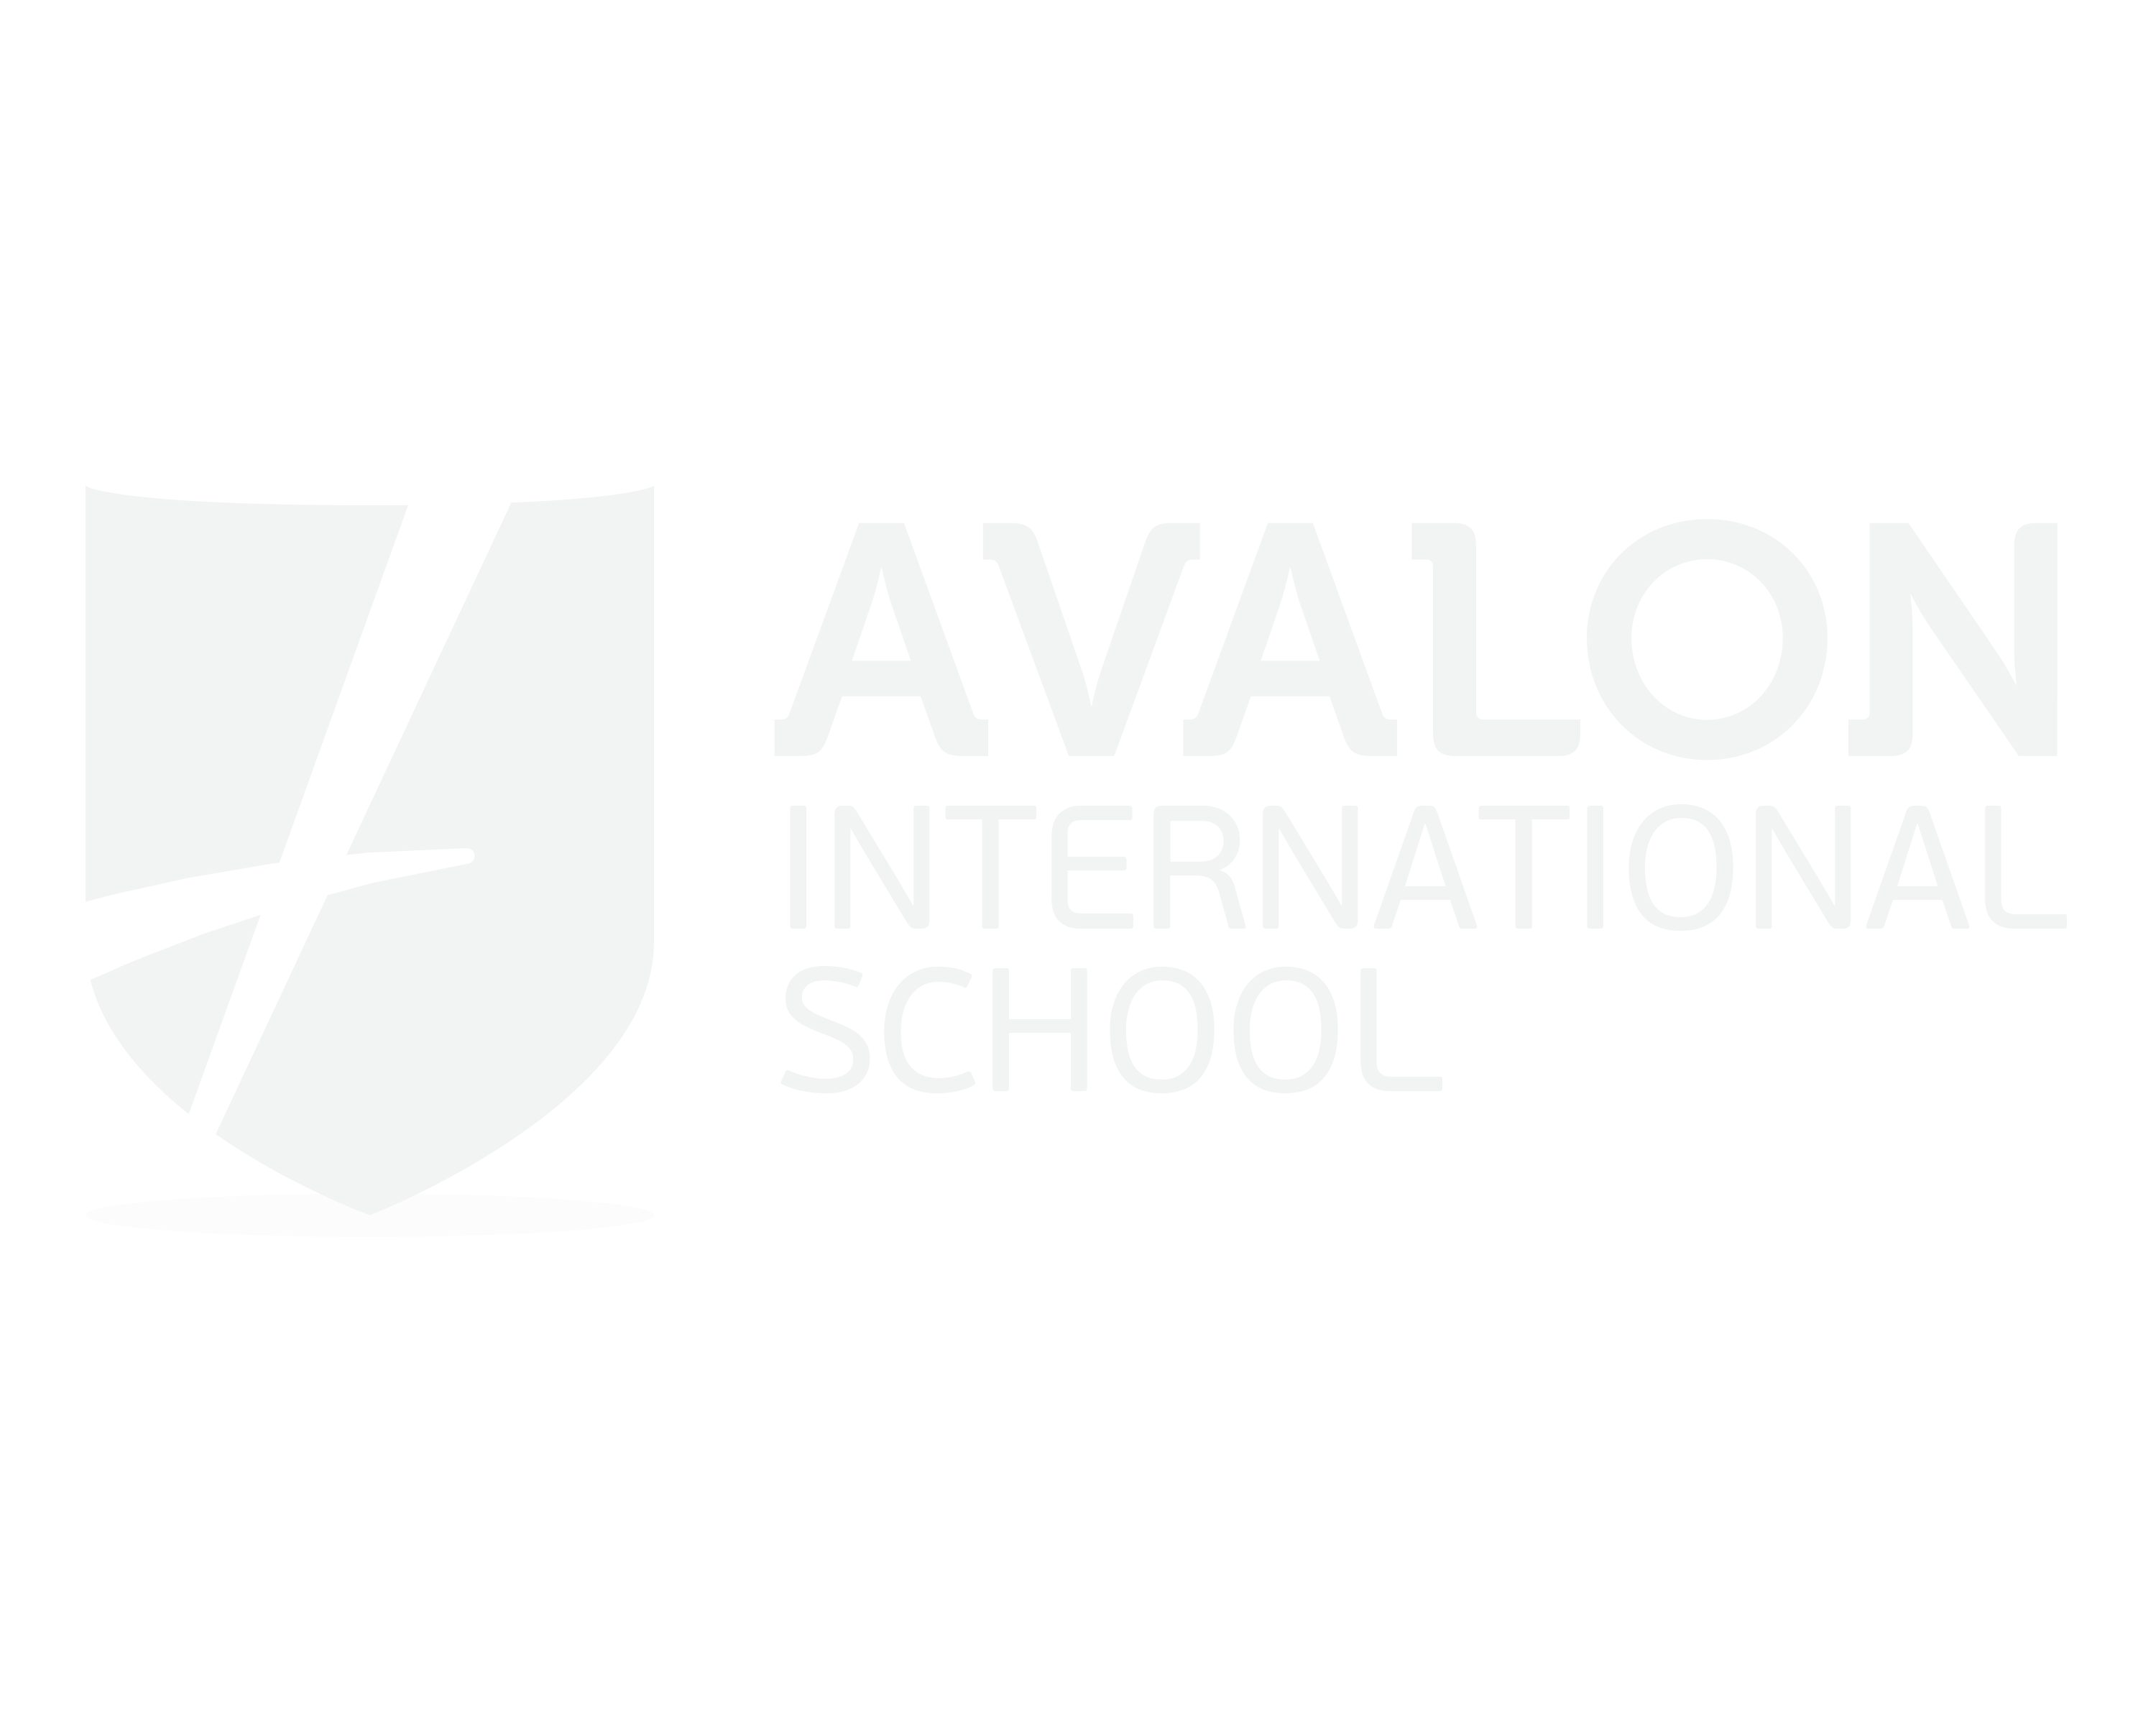 AVALON_4